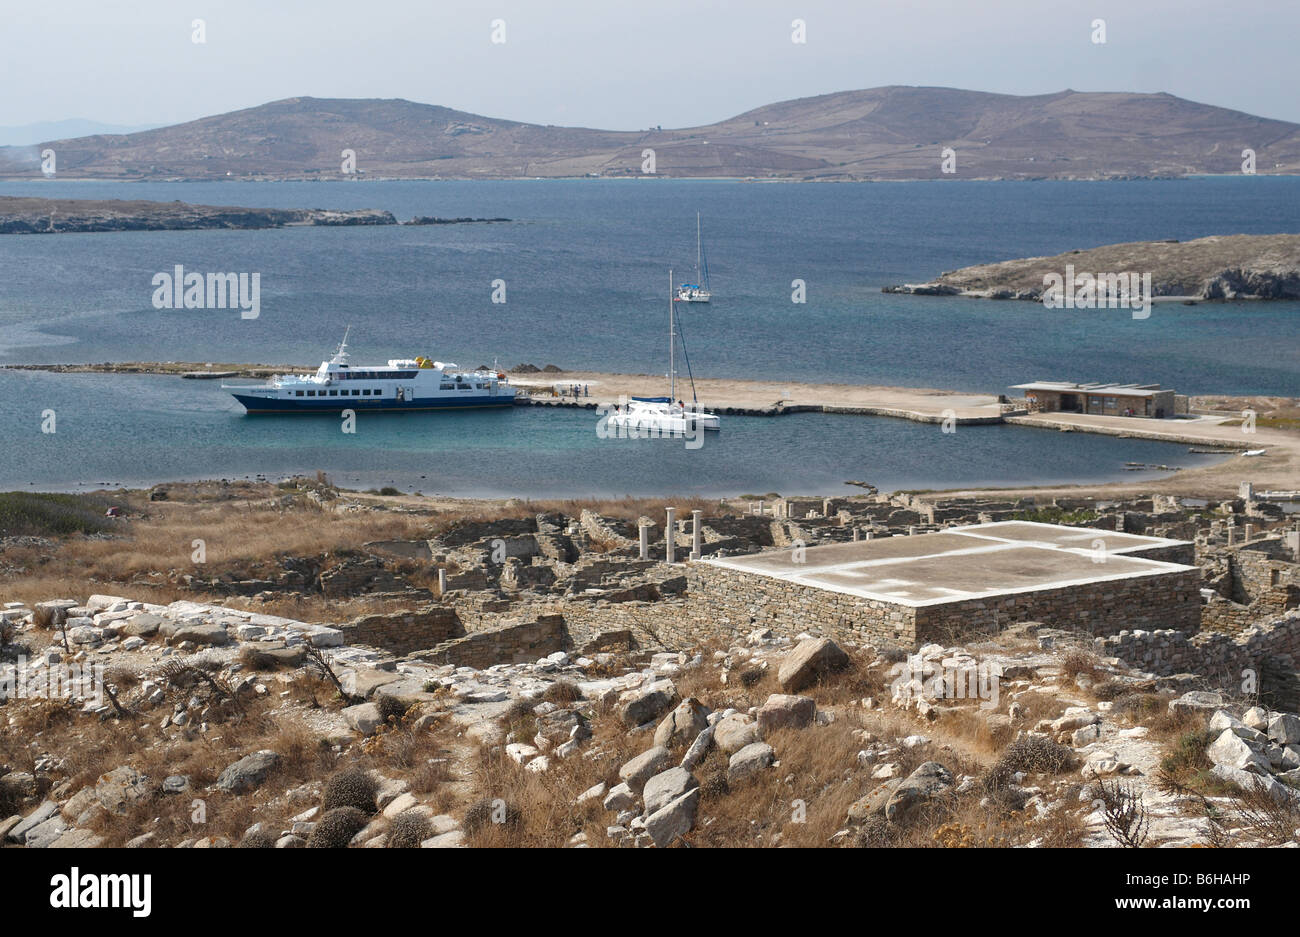 L'île de Délos est l'une des plus importantes figures mythiques, historiques et sites archéologiques en Grèce Banque D'Images